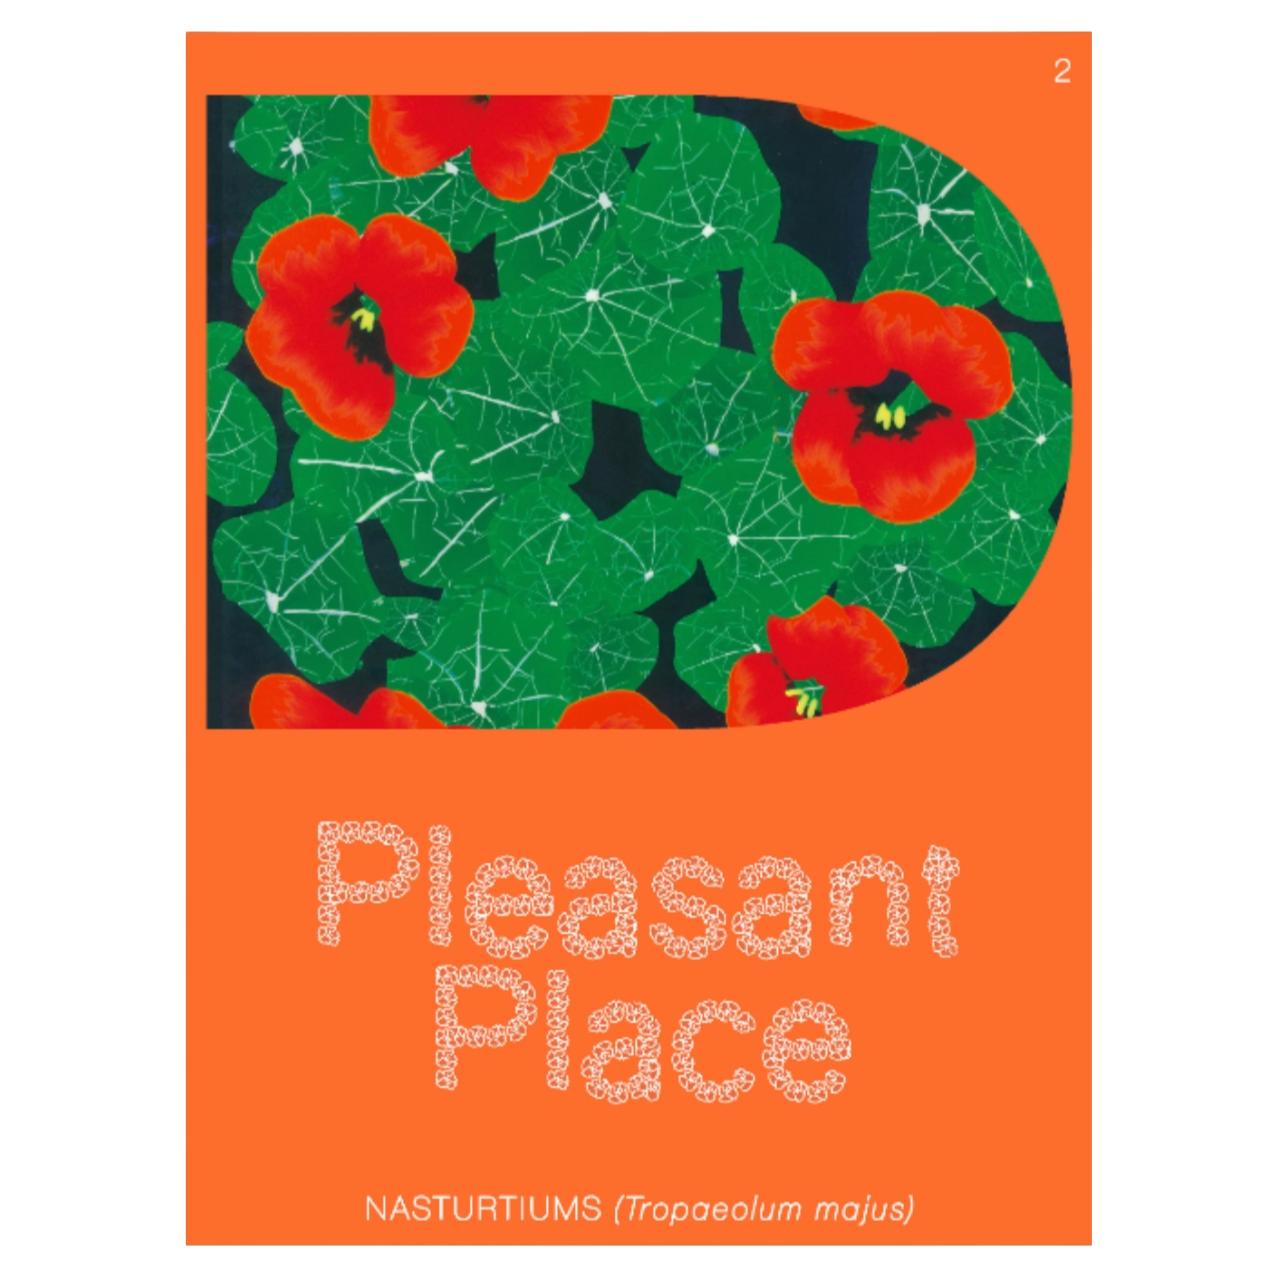 Pleasant Place: Nasturtiums